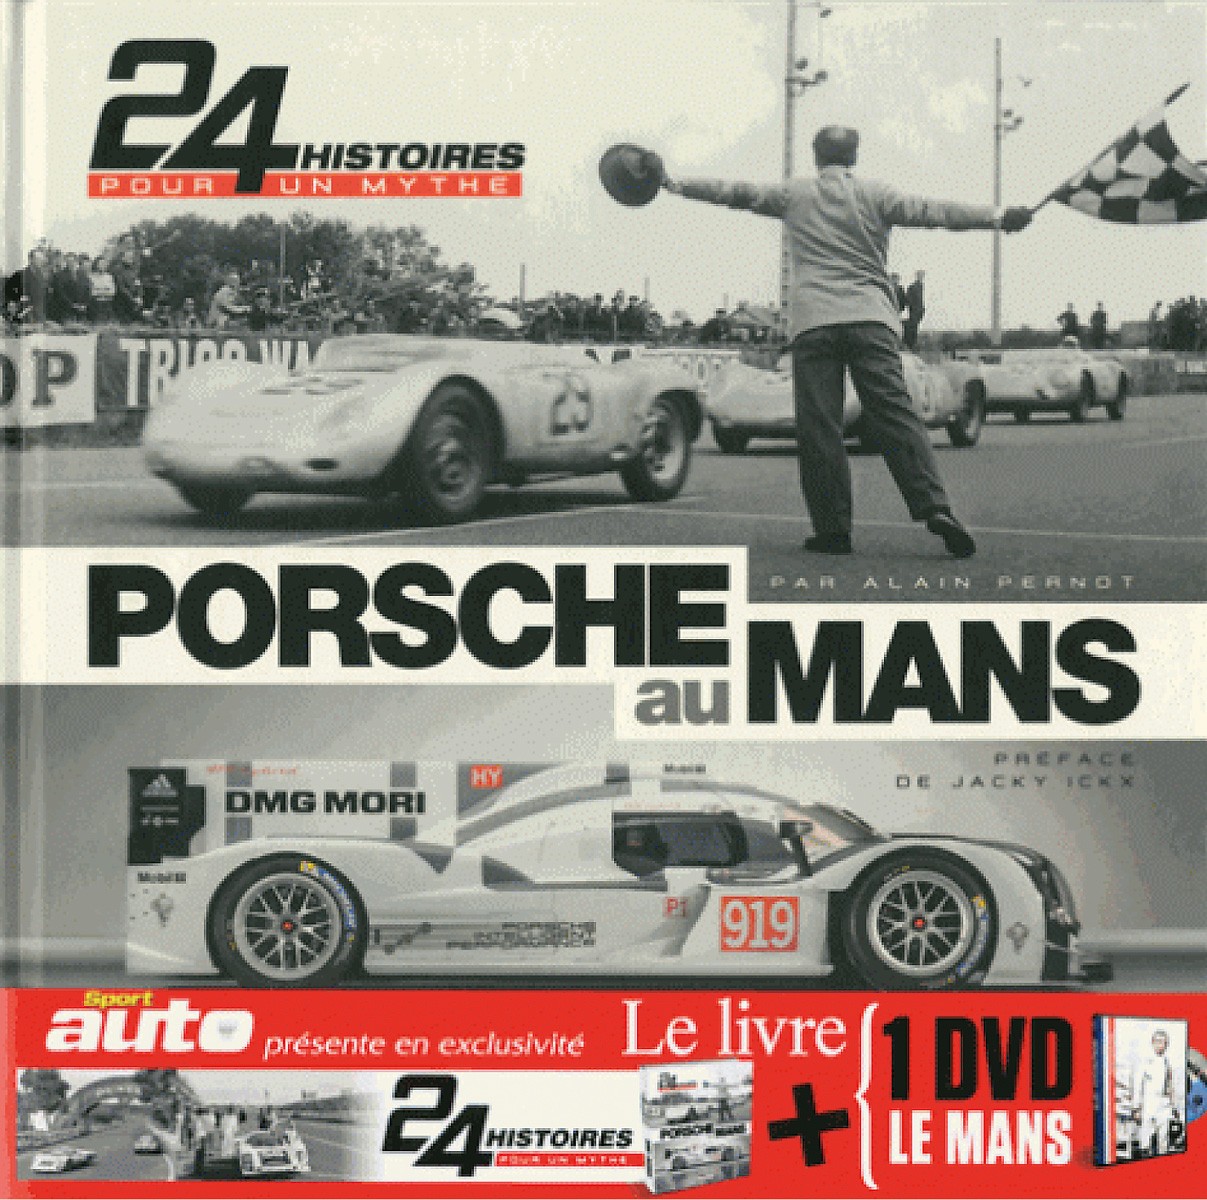 Porsche au Mans - 24 histoires pour un mythe + DVD